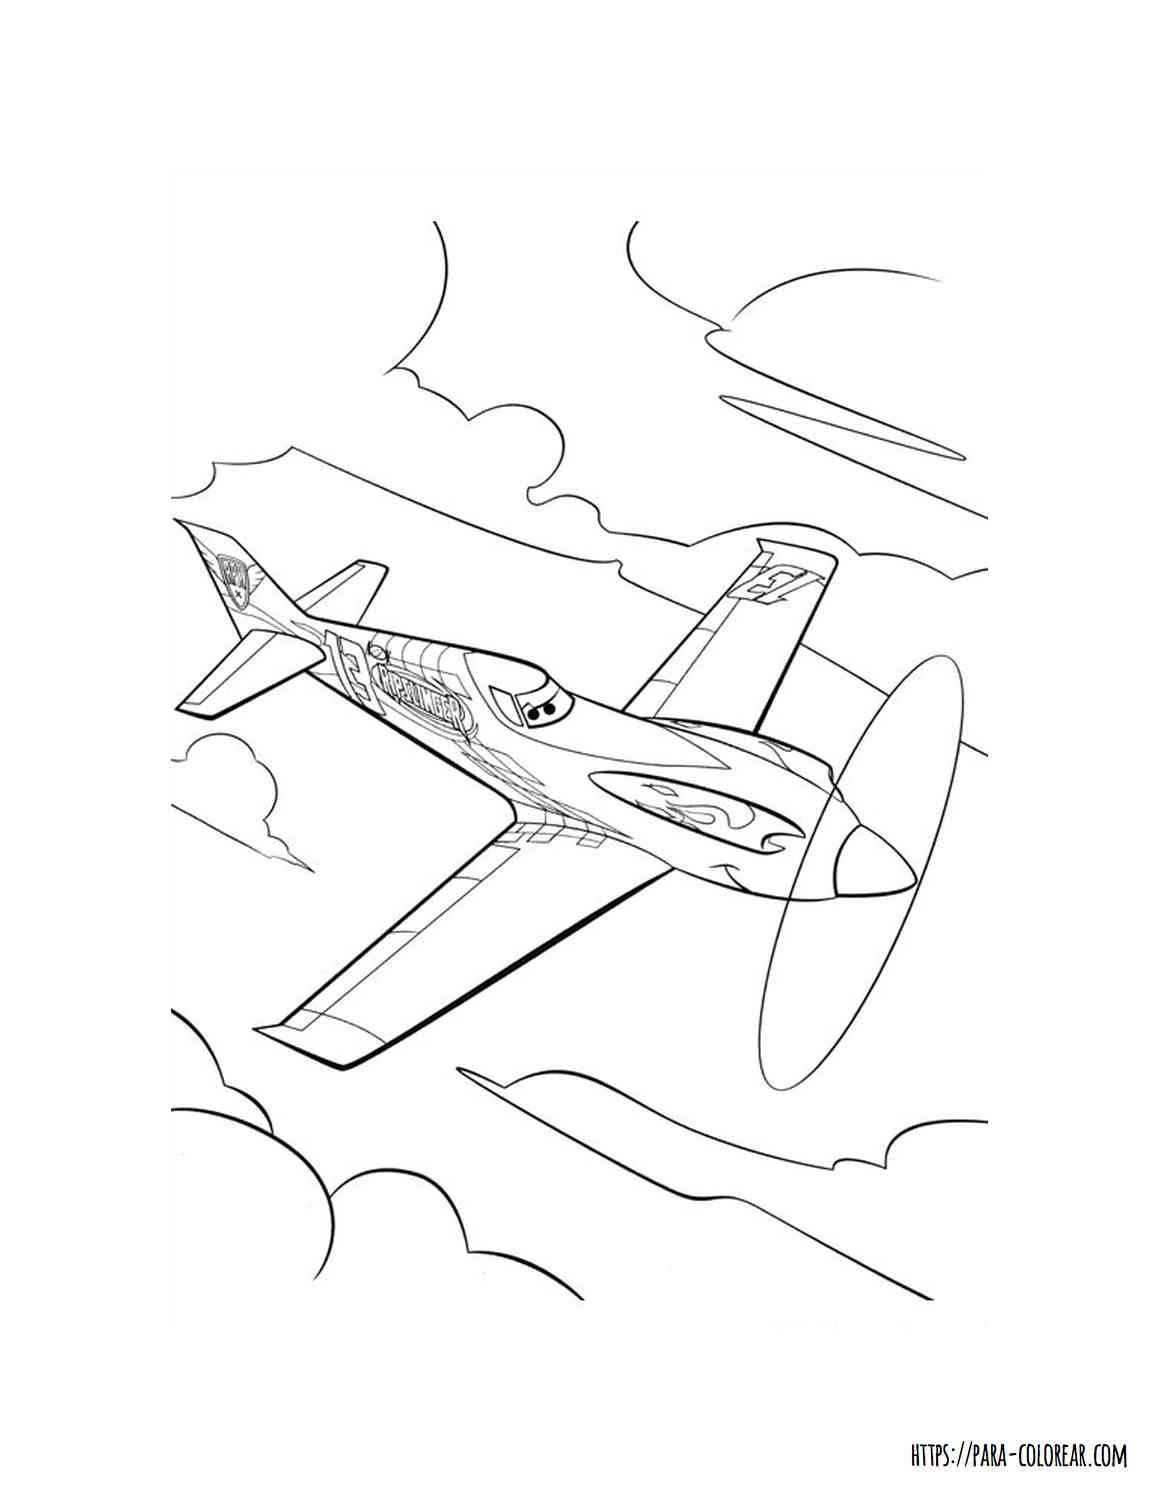 Dibujo de avion para colorear | Para-Colorear.com